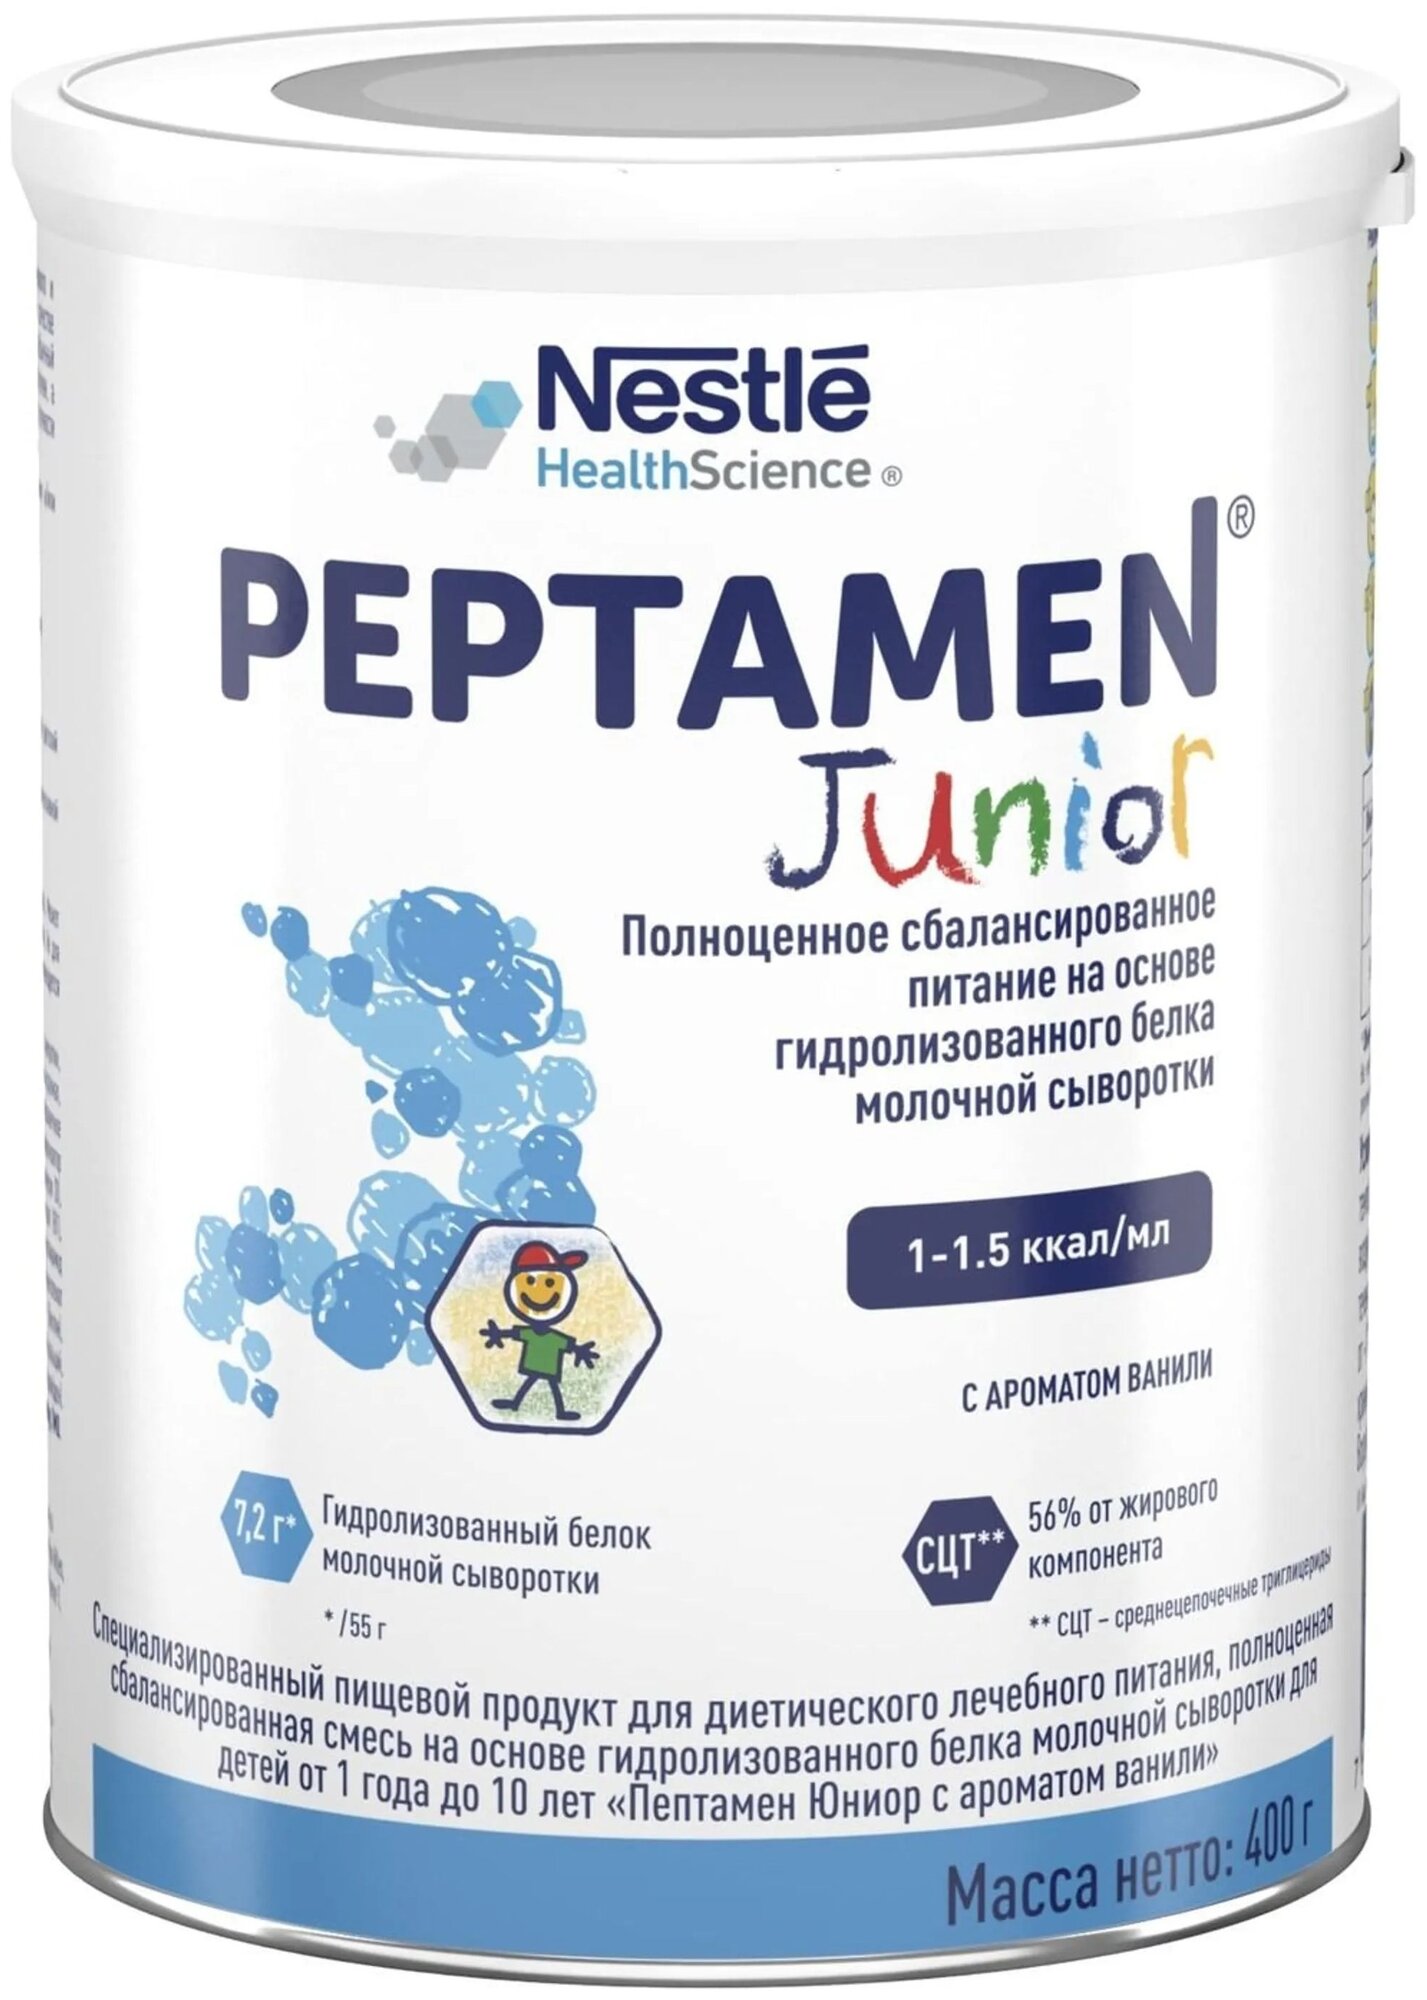 Специализированная молочная смесь NestleHealthScince Peptamen Junior (Пептамен Джуниор) для лечебного питания детей от 1 года до 10 лет, 400 г